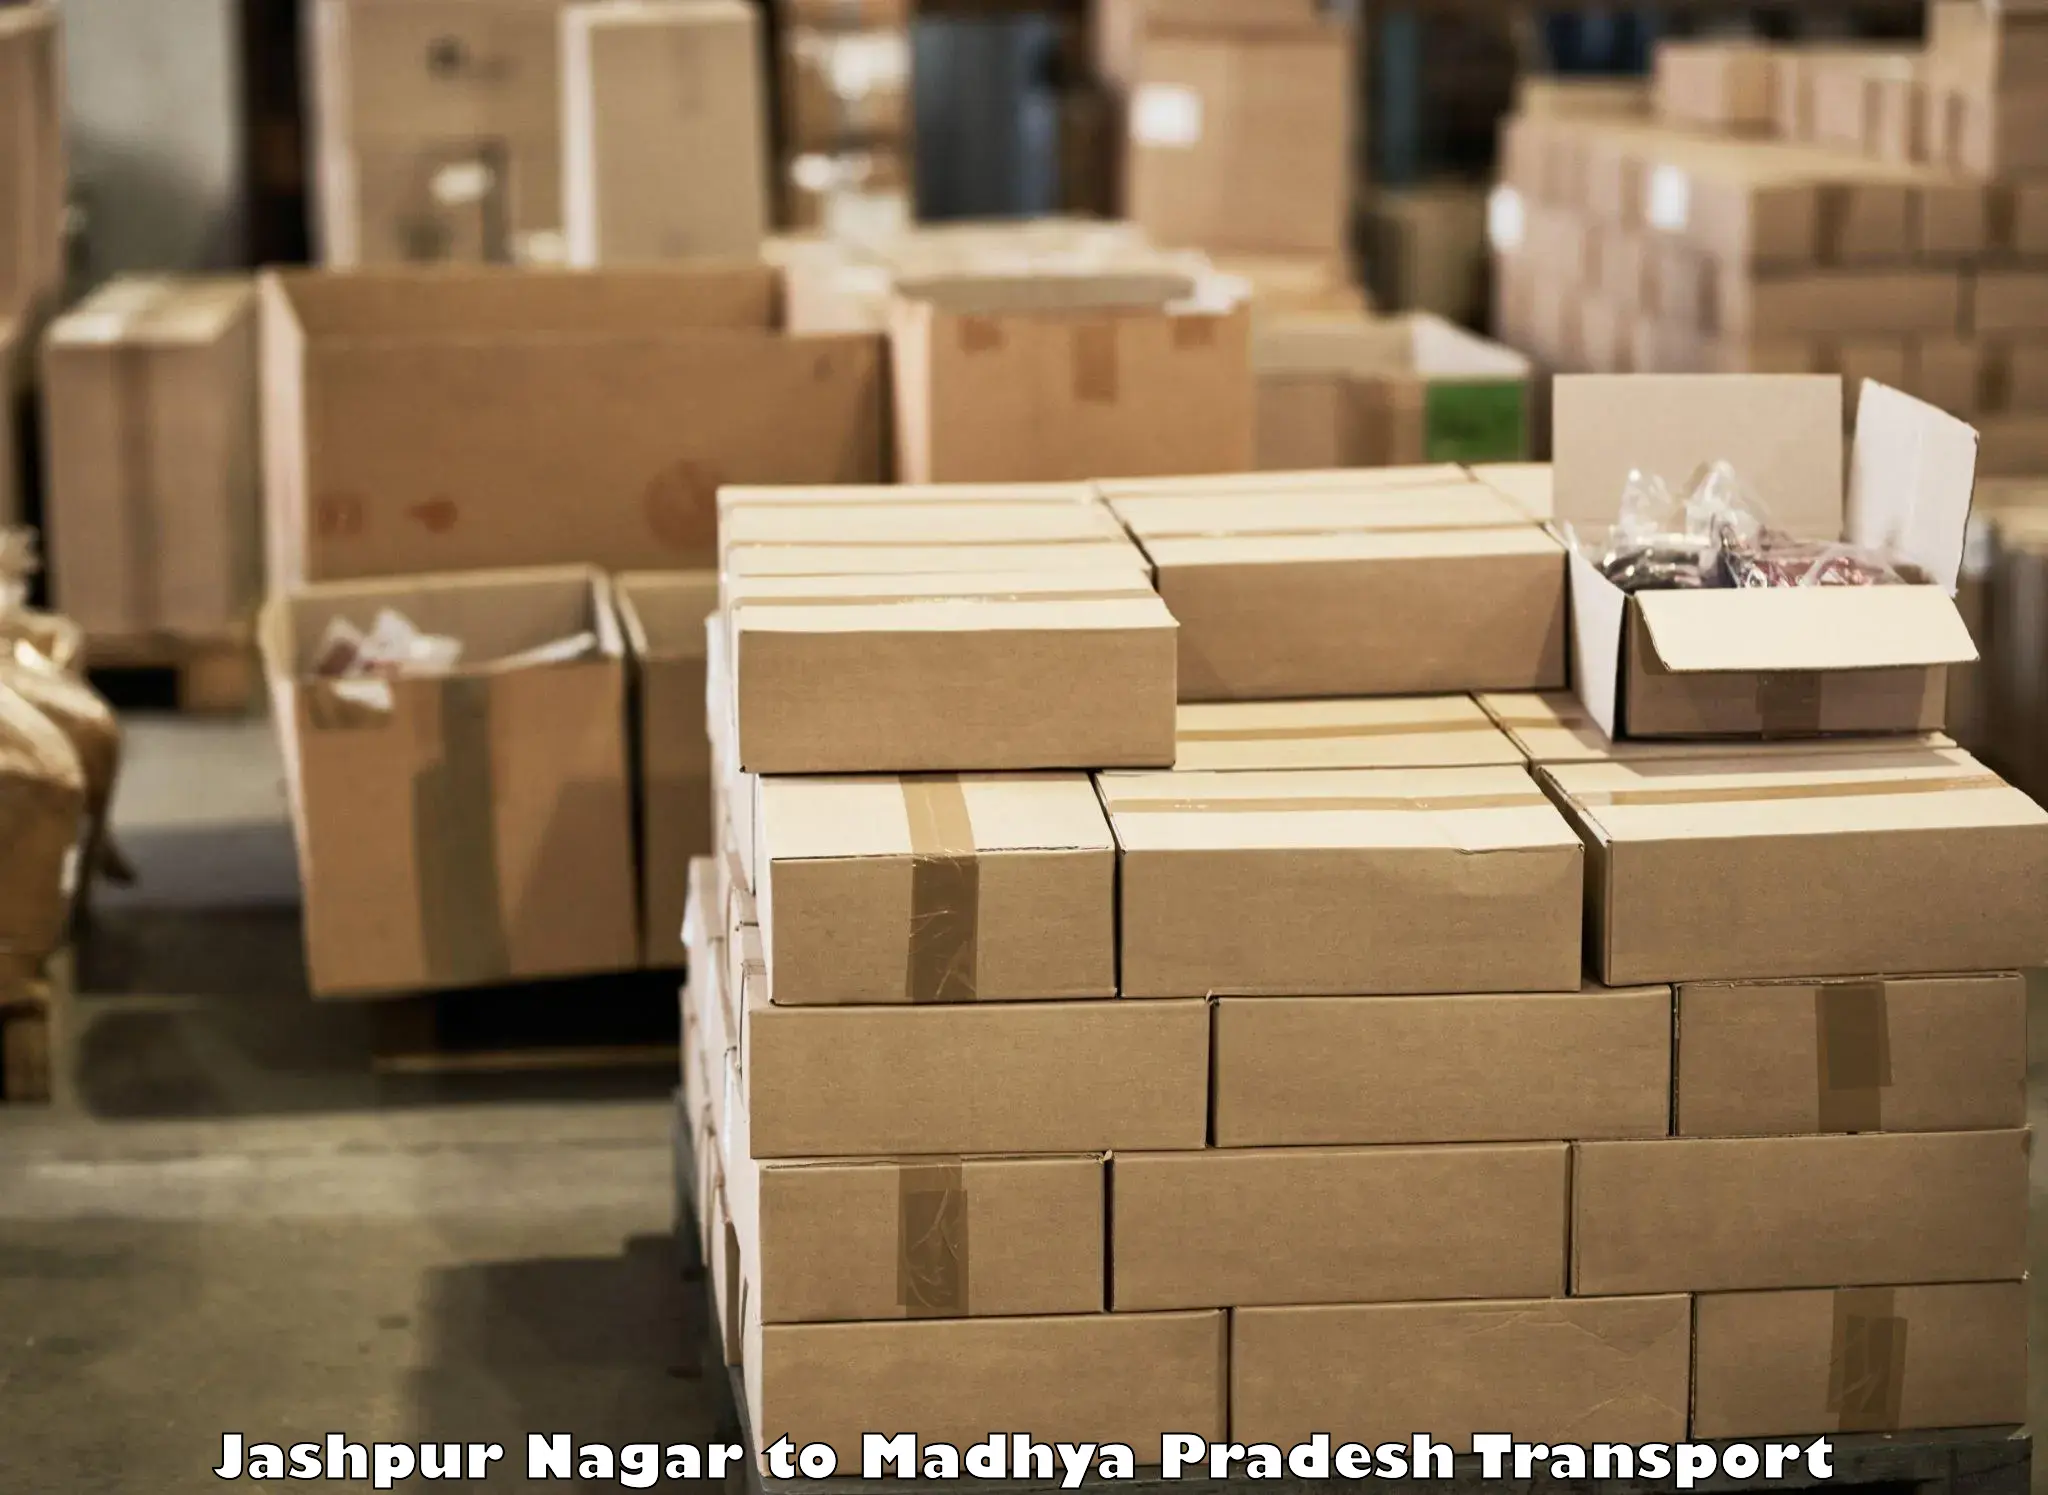 Pick up transport service Jashpur Nagar to Chhatarpur